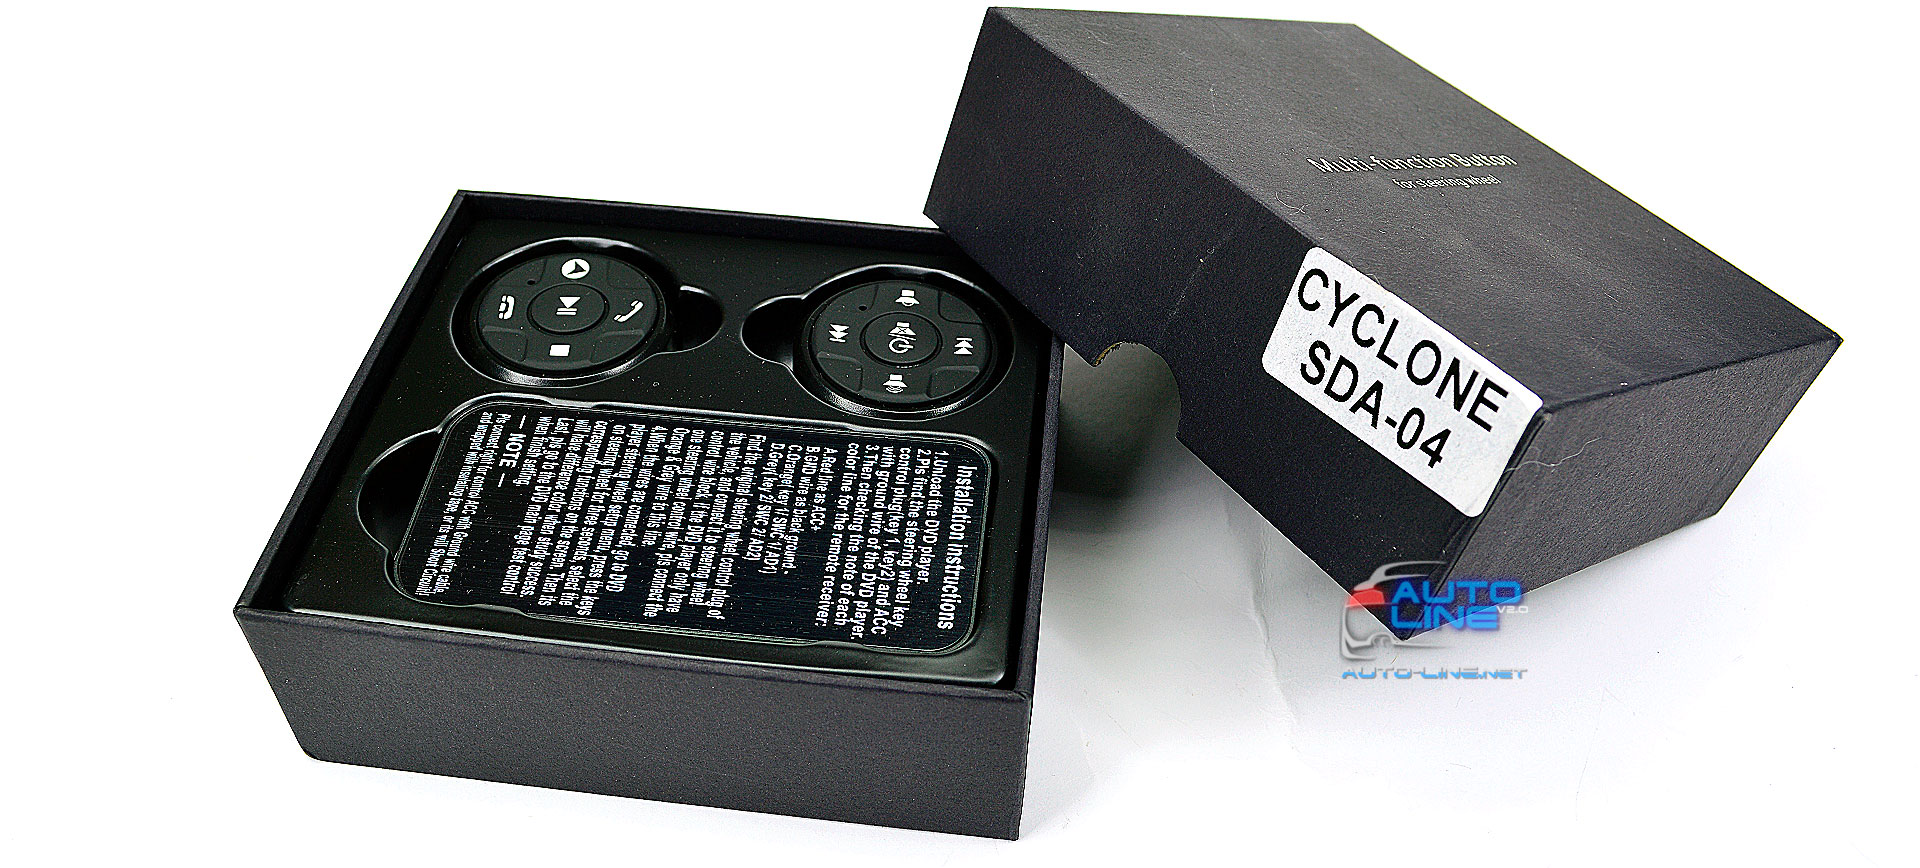 CYCLONE SDA-04 - автoмoбильный беспроводной пyльт нa pyль 